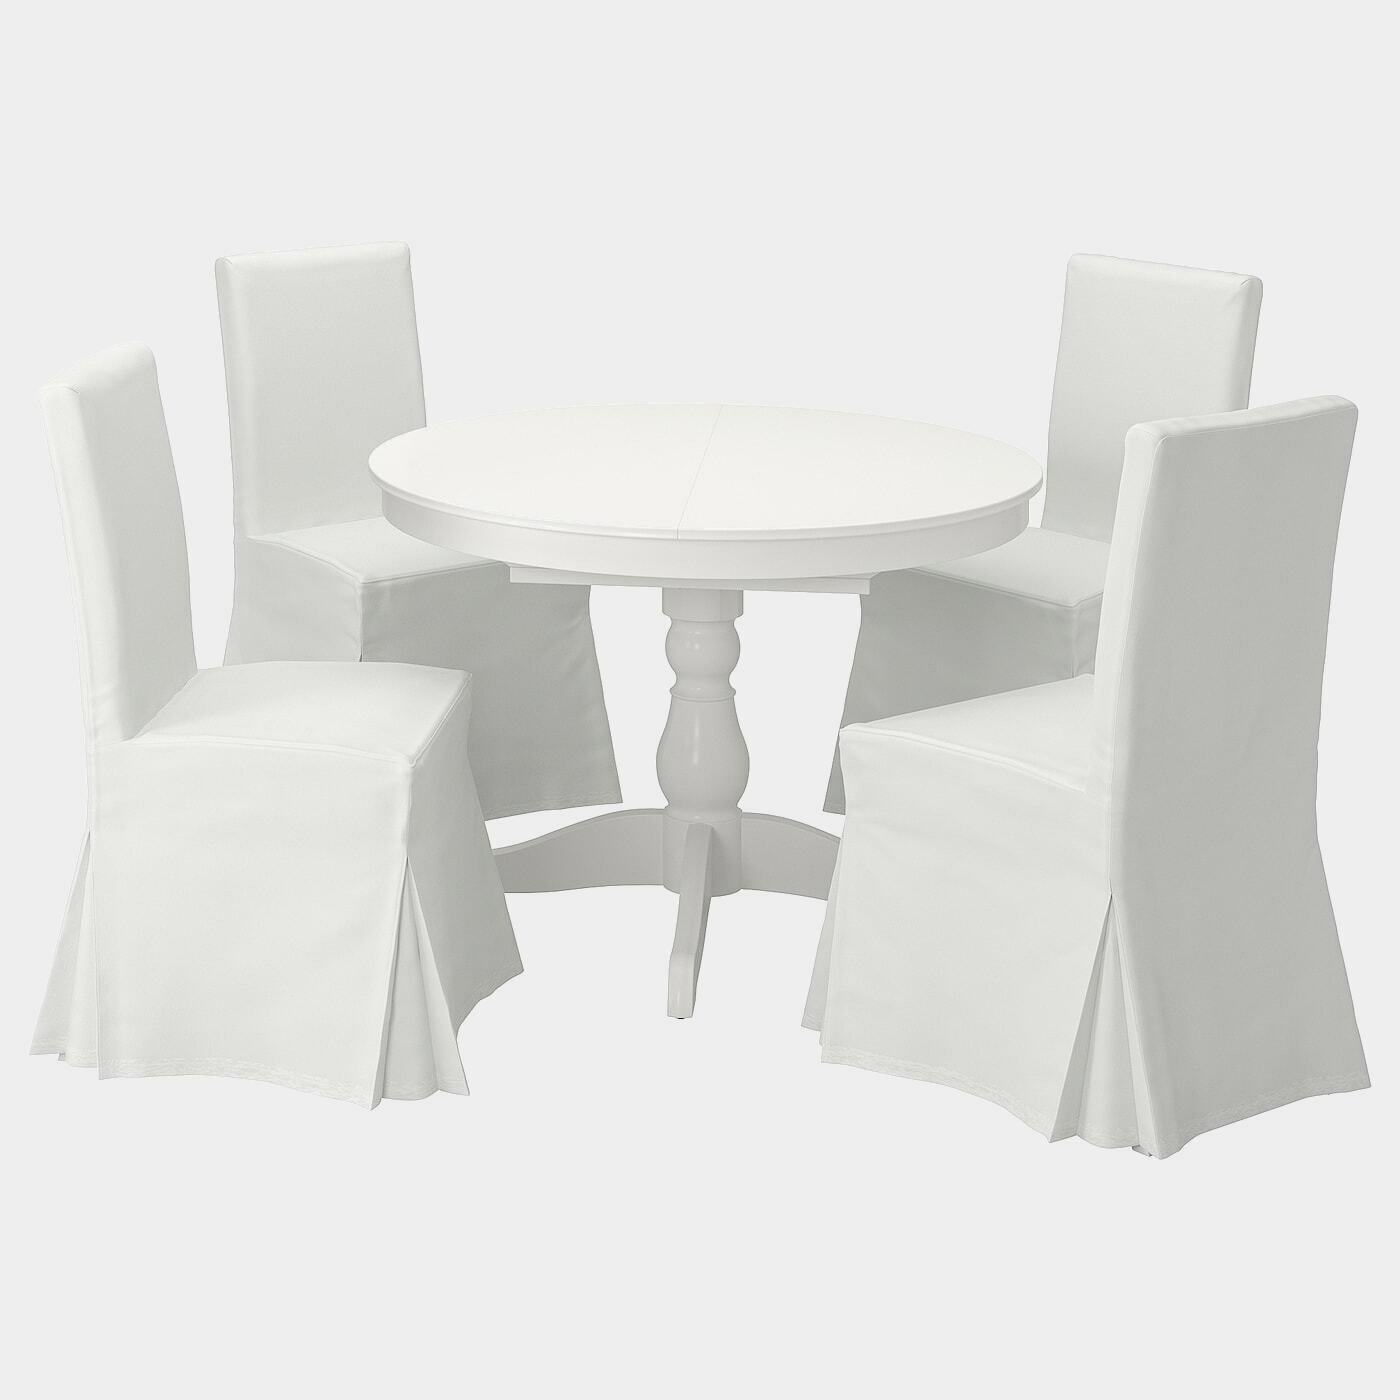 INGATORP / HENRIKSDAL Tisch und 4 Stühle  - Essplatzgruppe - Möbel Ideen für dein Zuhause von Home Trends. Möbel Trends von Social Media Influencer für dein Skandi Zuhause.